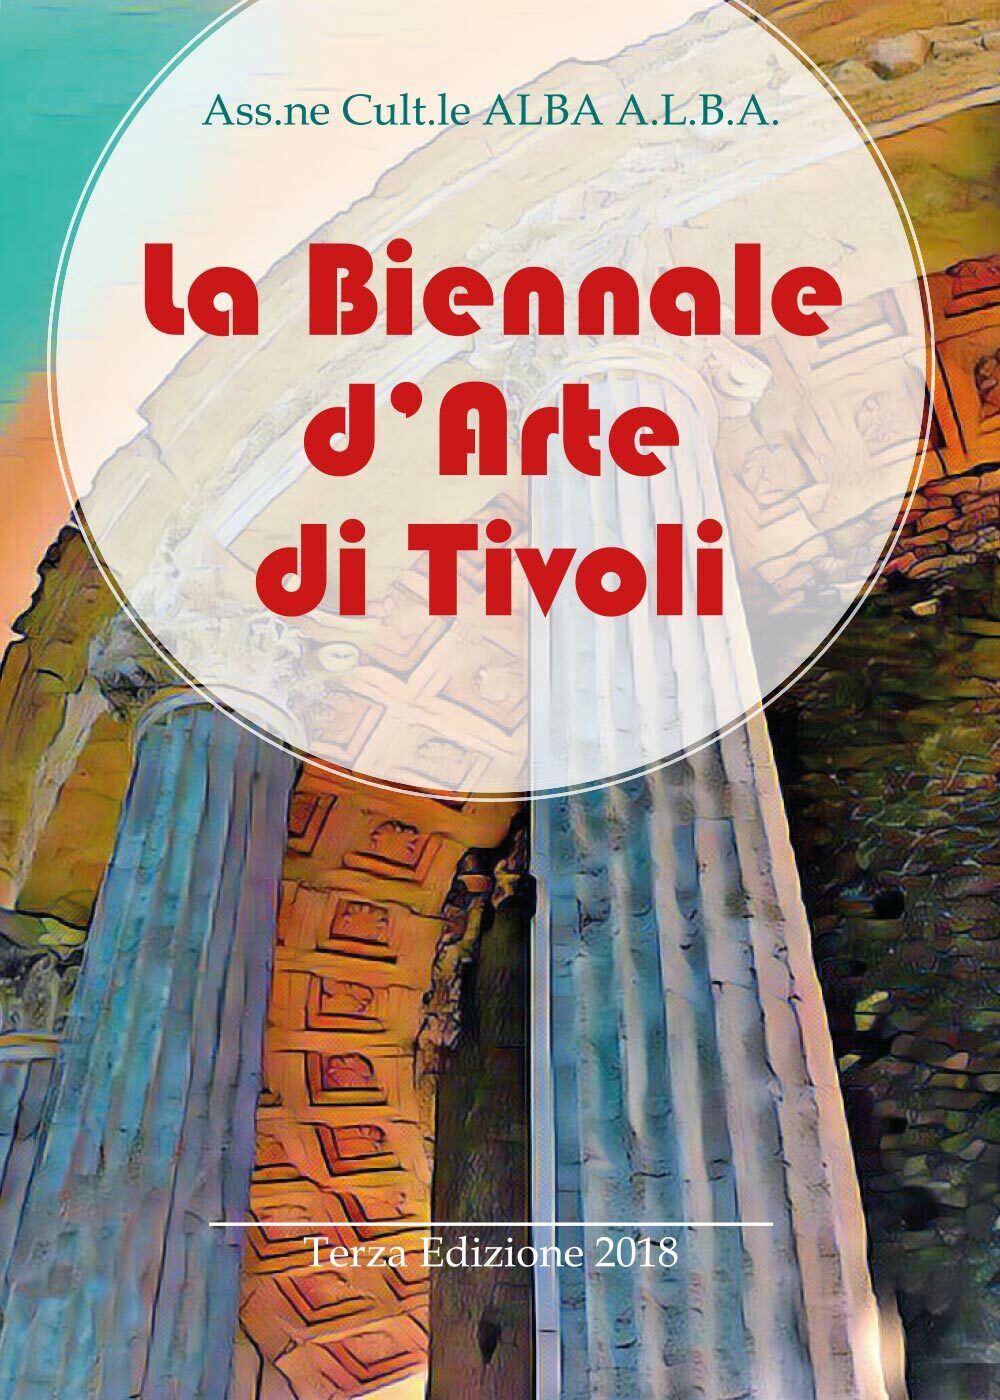 La Biennale d'Arte di Tivoli - Terza Edizione 2018, Ass.ne Cult.le Alba  - ER